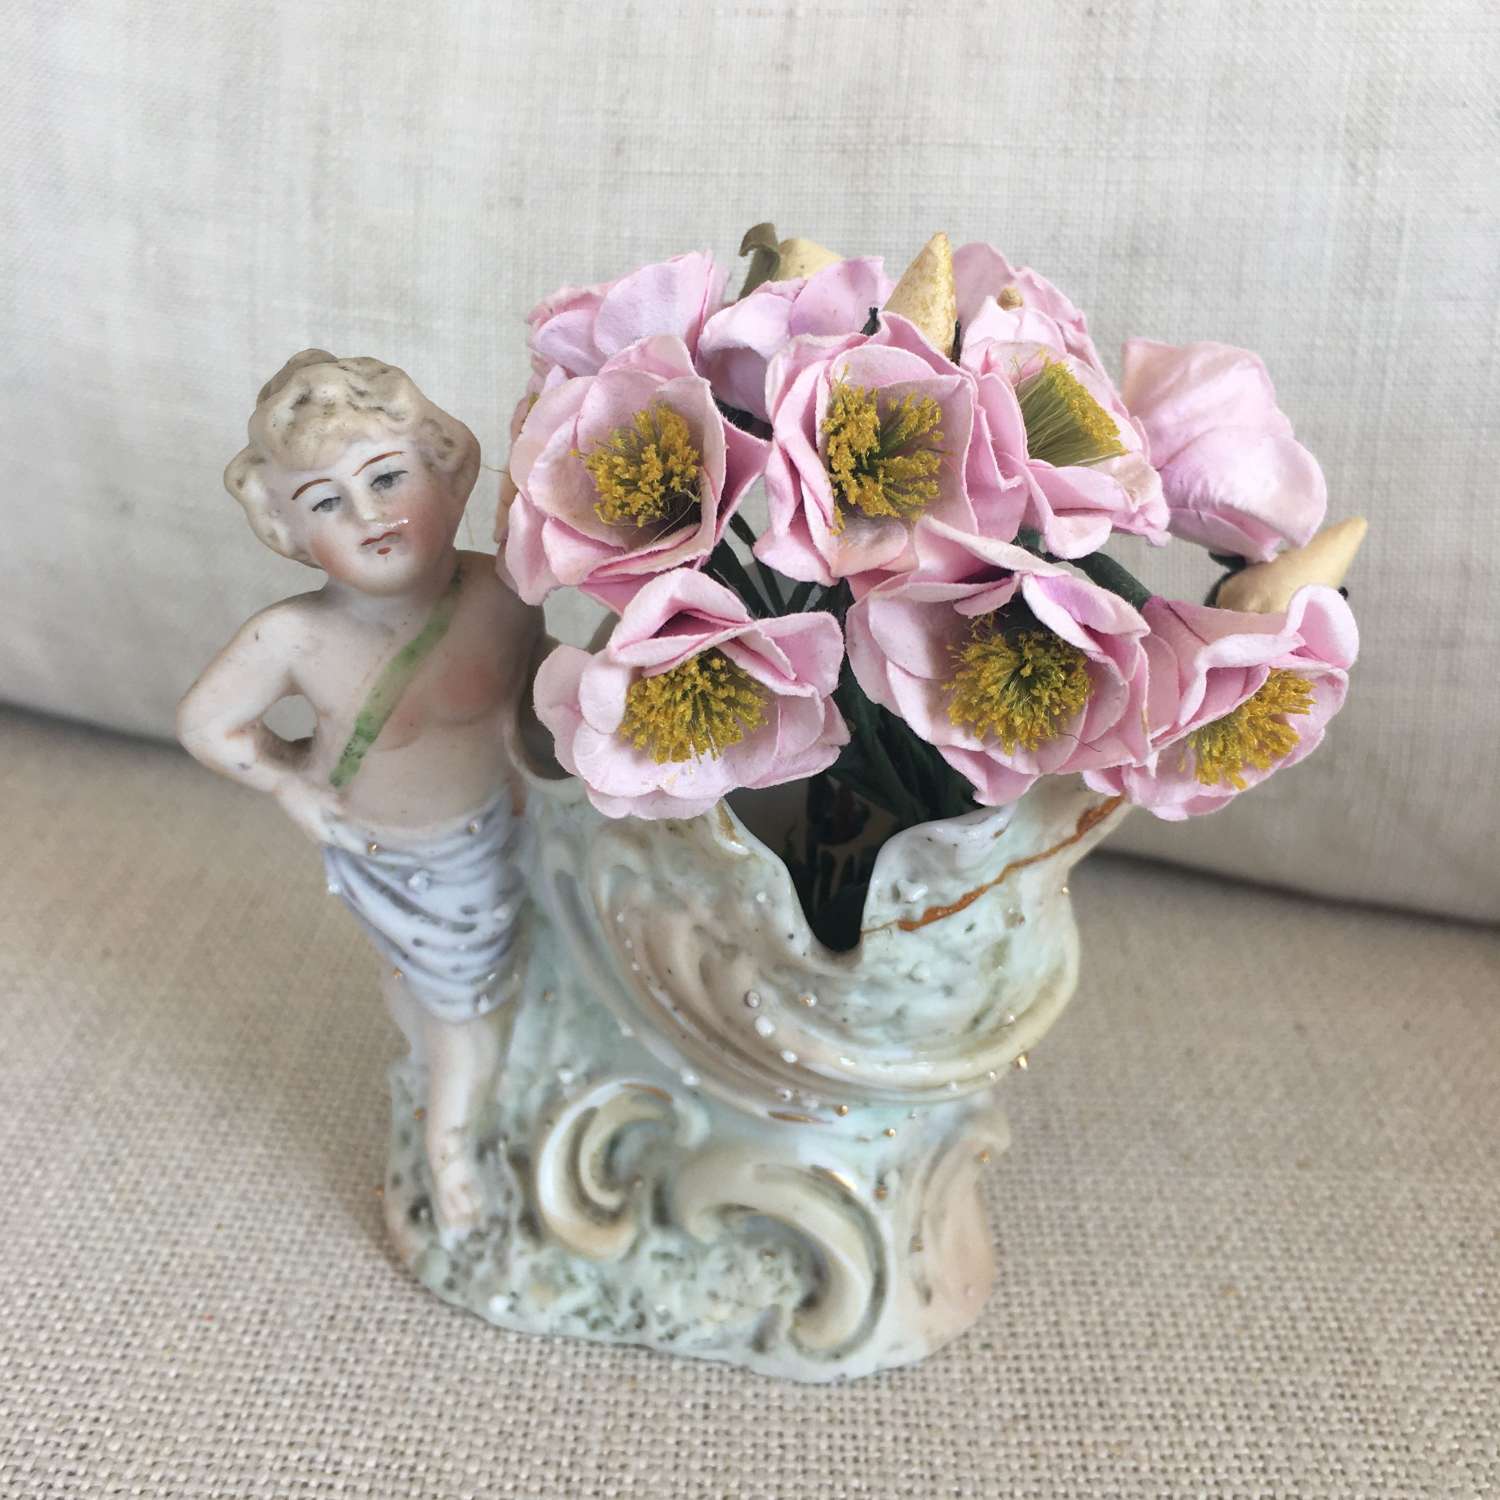 Victorian putti and flower basket vase